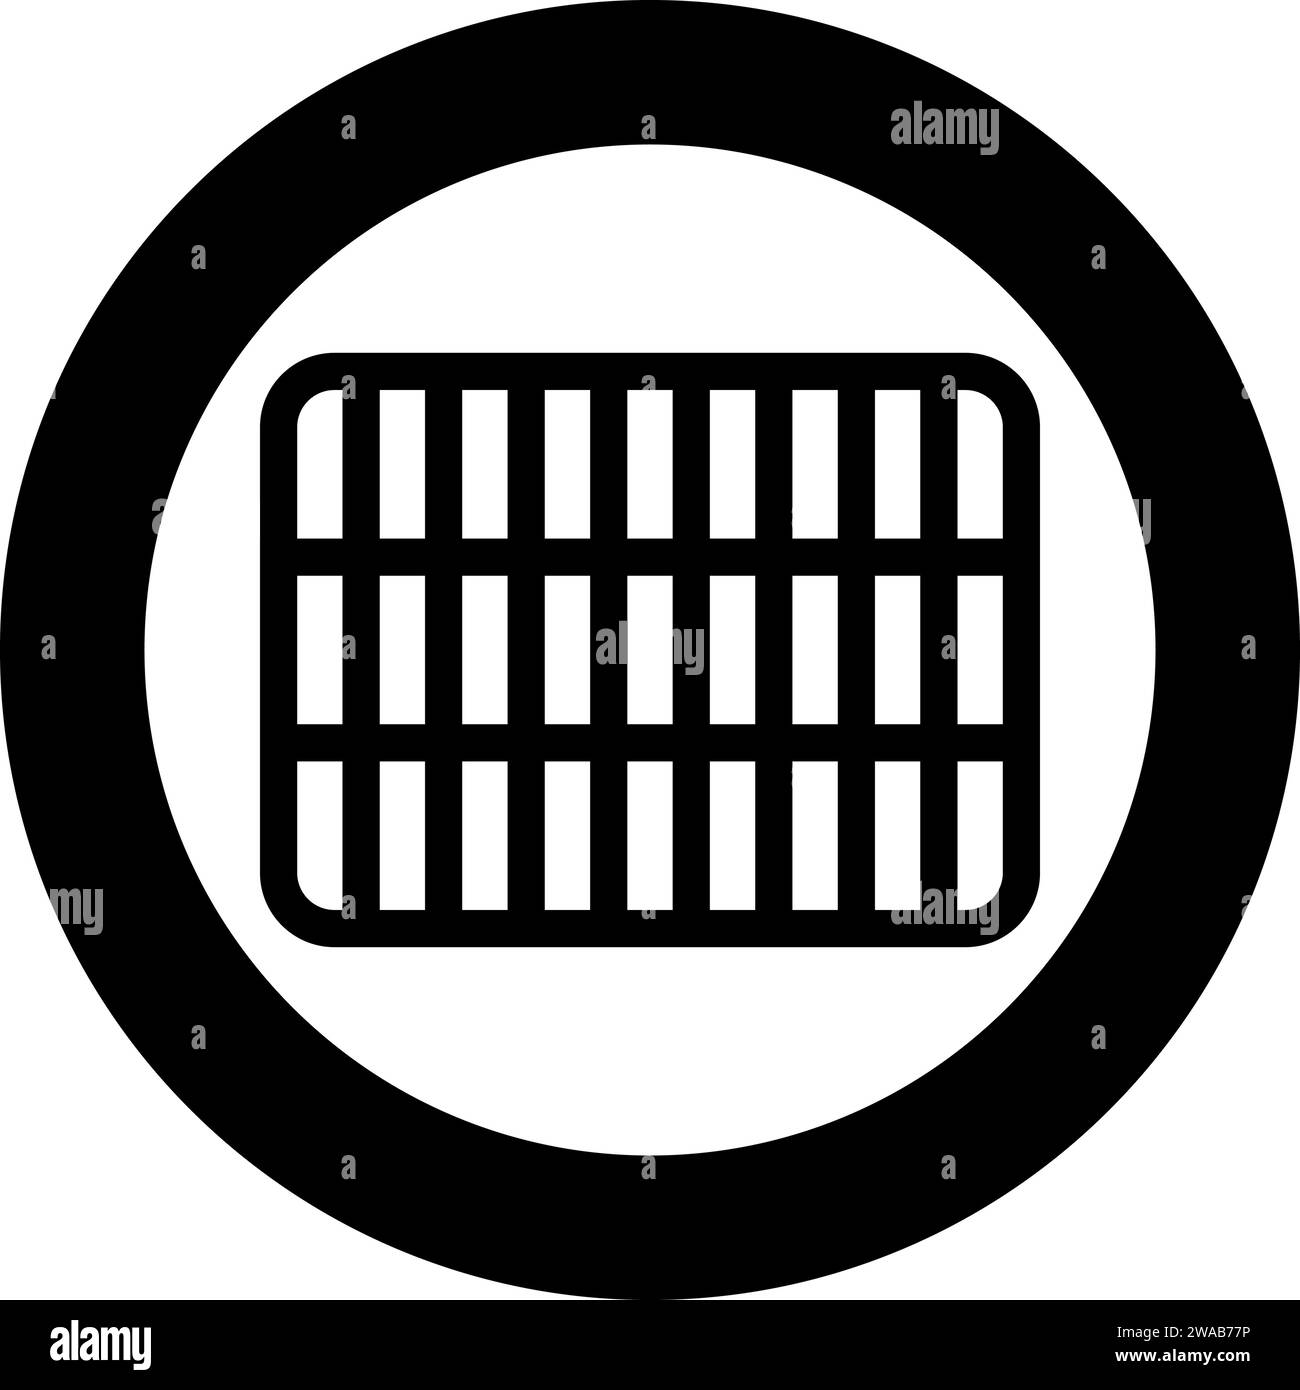 Grille de grille treillis treillis treillis treillis grillage grill grill grill surface de cuisson rectangle forme icône de rondeur dans le cercle rond illustration vectorielle de couleur noire Illustration de Vecteur